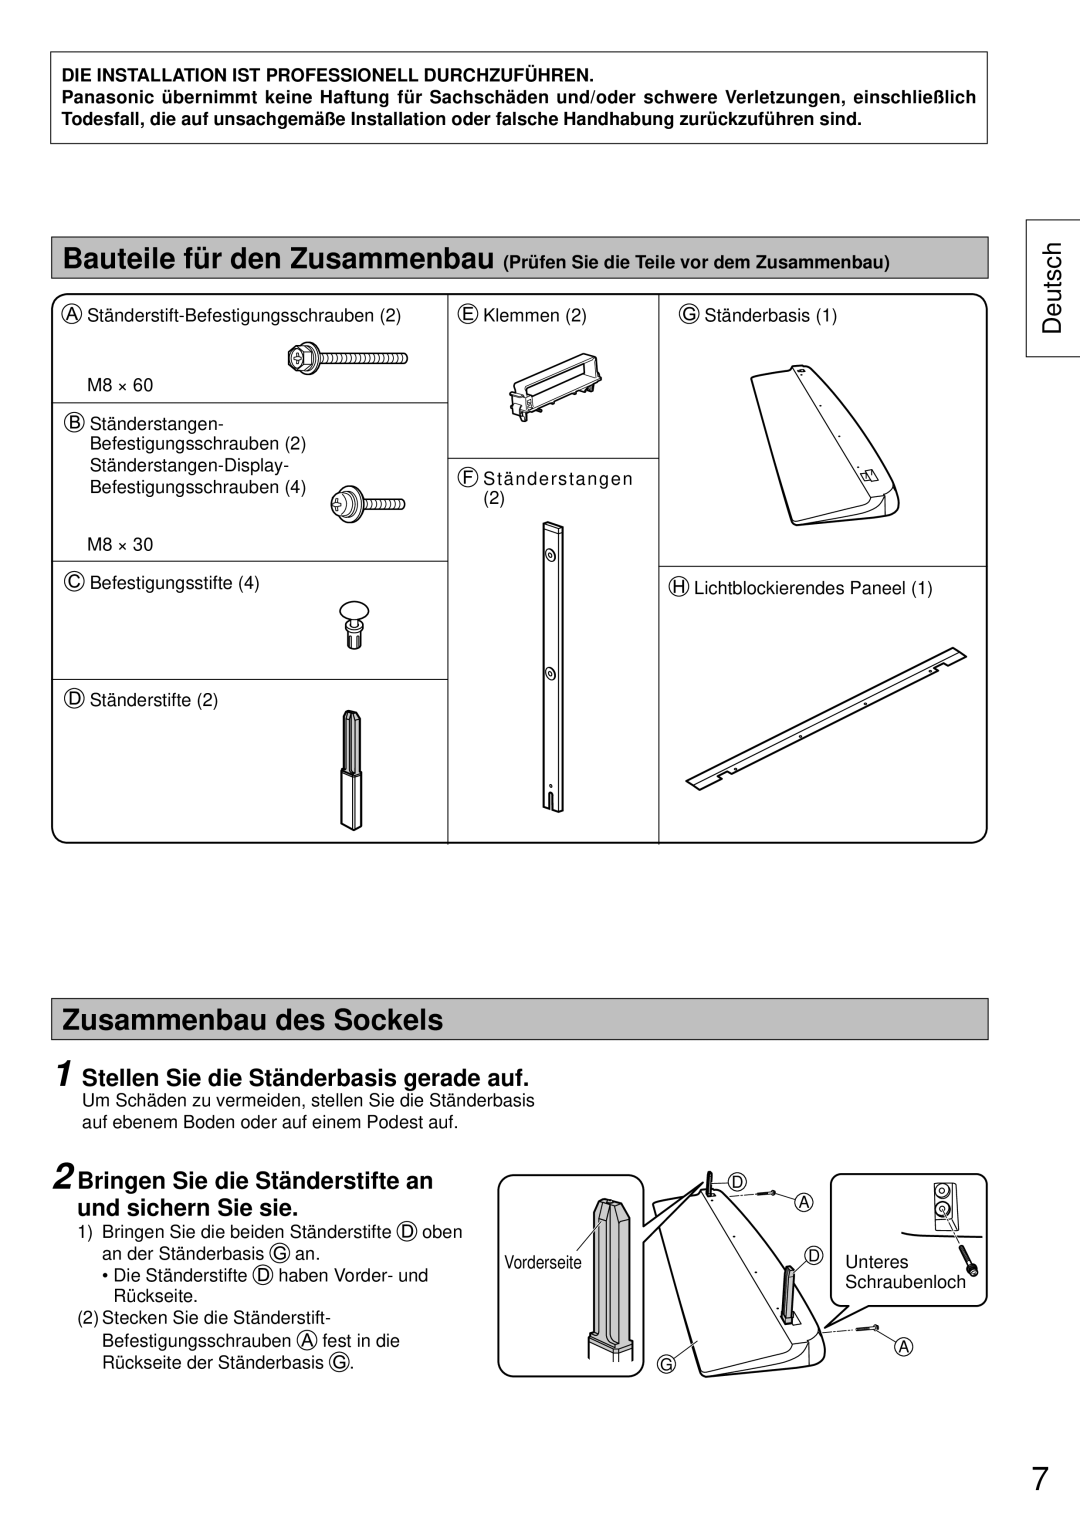 Panasonic TY-ST65VX100 installation instructions Zusammenbau des Sockels, Stellen Sie die Ständerbasis gerade auf, Deutsch 